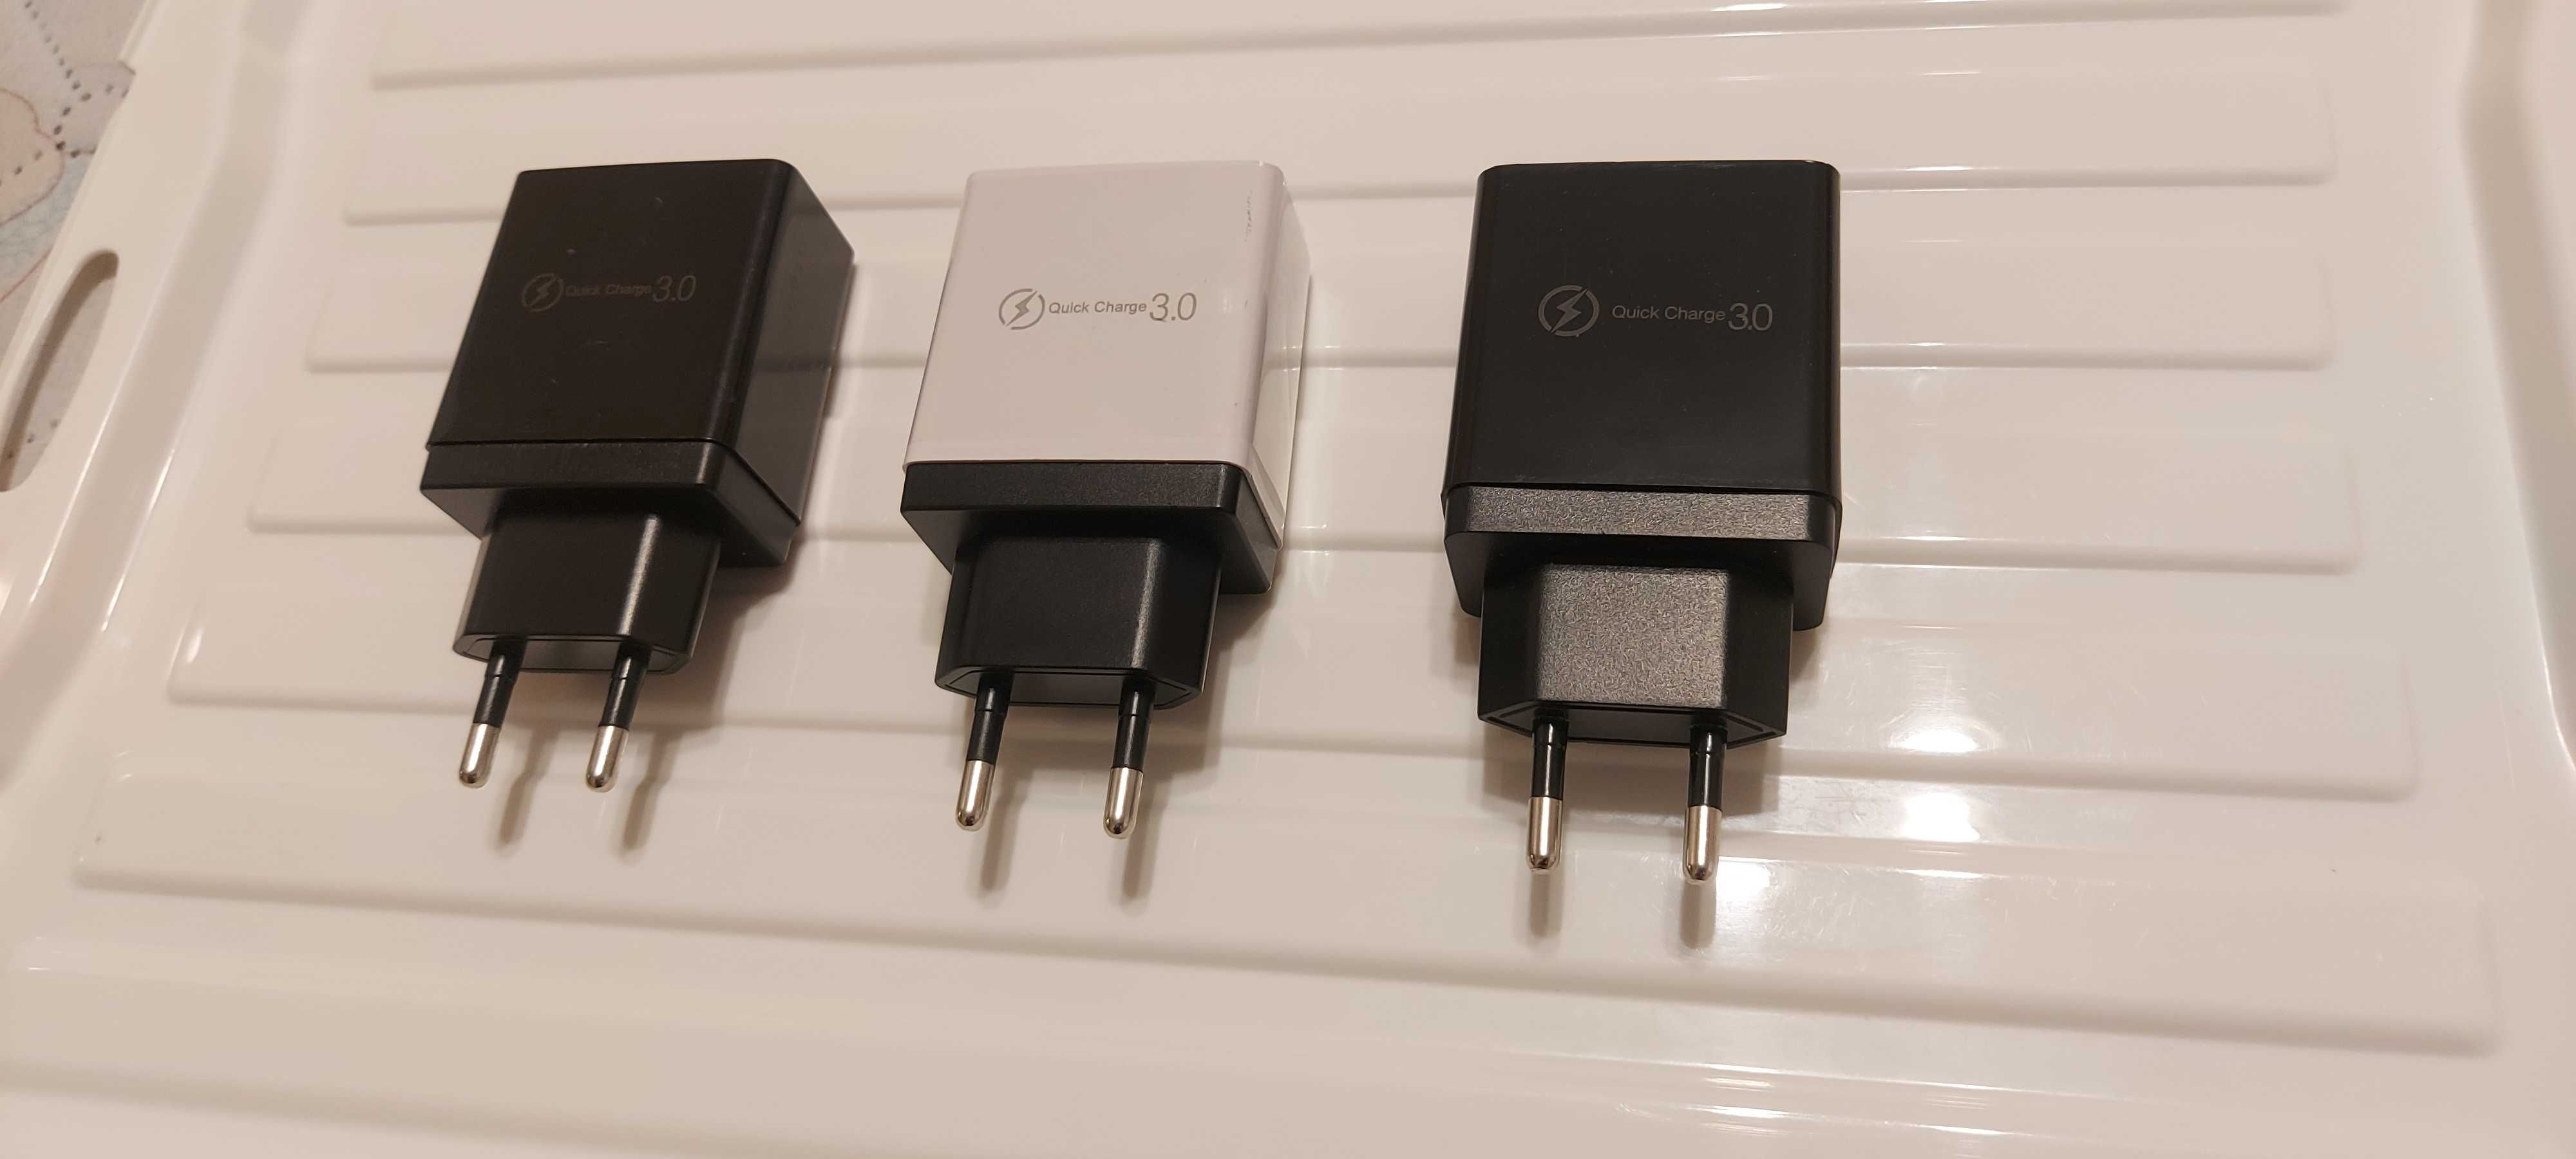 Quick 3.0 USB Charger-бързо USB зарядно за телефон-таблет